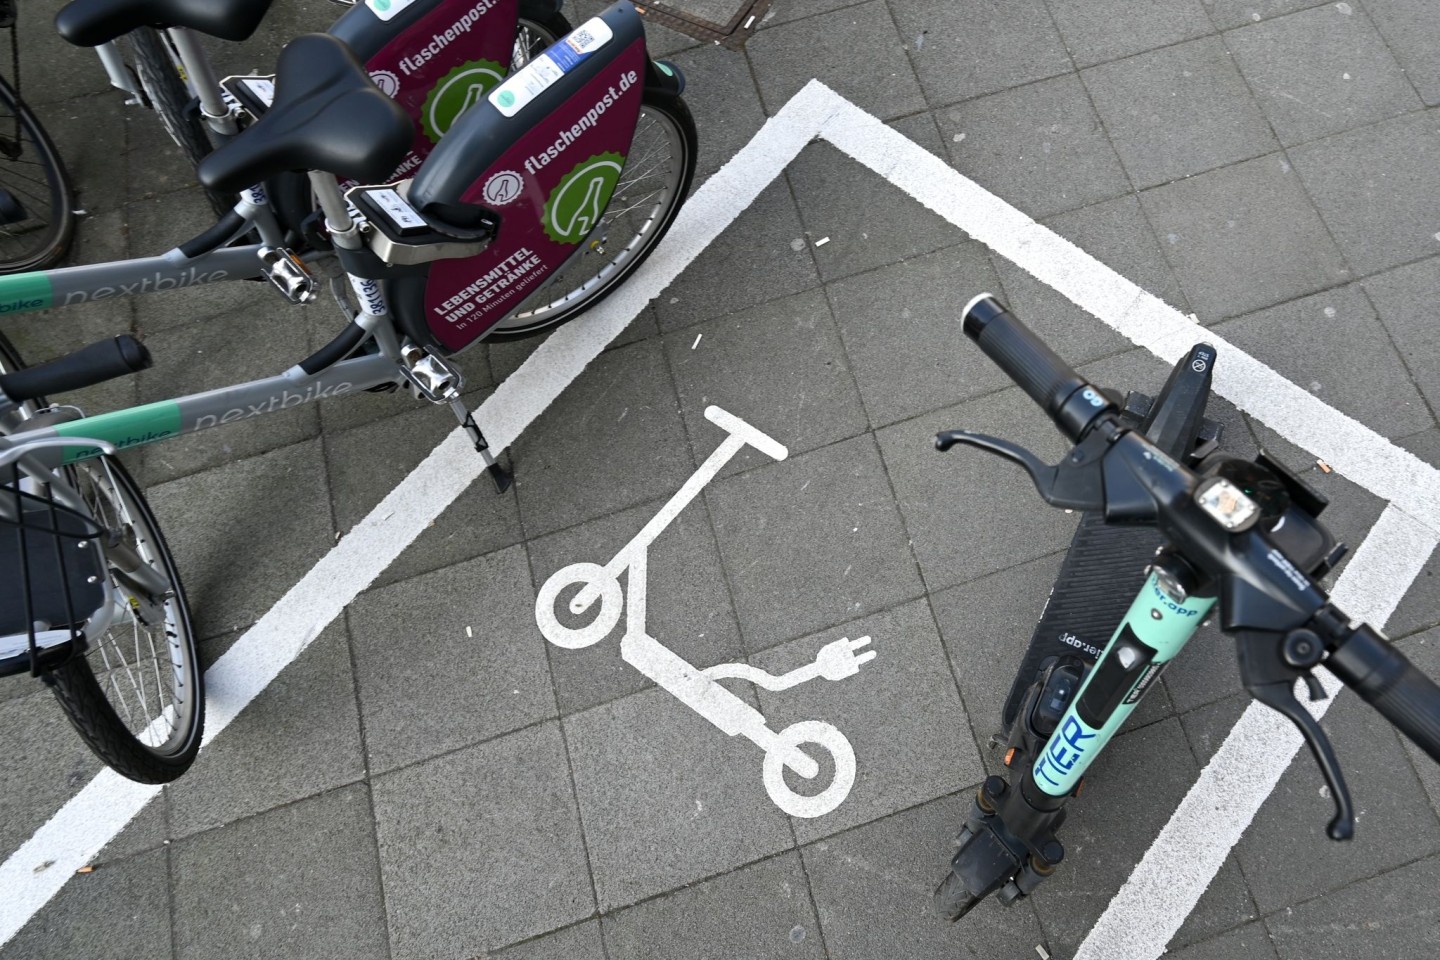 Ein Piktogramm weist auf eine Abstellfläche für E-Scooter hin. Die Stadt Frankfurt setzt seit einem Jahr auf kostenpflichtige Sondernutzungserlaubnisse für die Verleiher der Scooter.